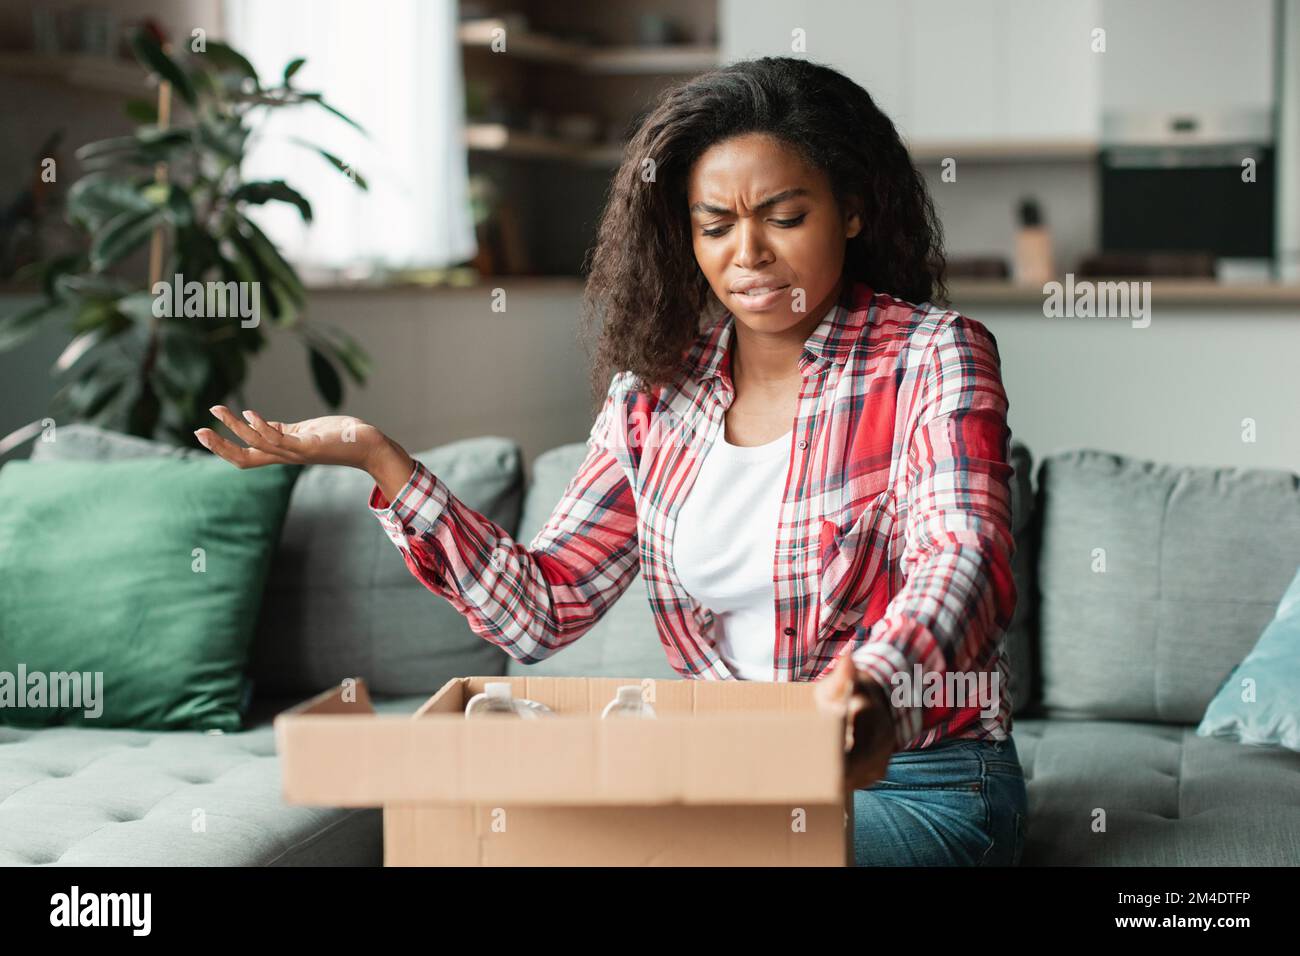 Schockierte, wütende Millenials schwarze Frau, die Pappkartons auspackt, Geste im Wohnzimmer Stockfoto